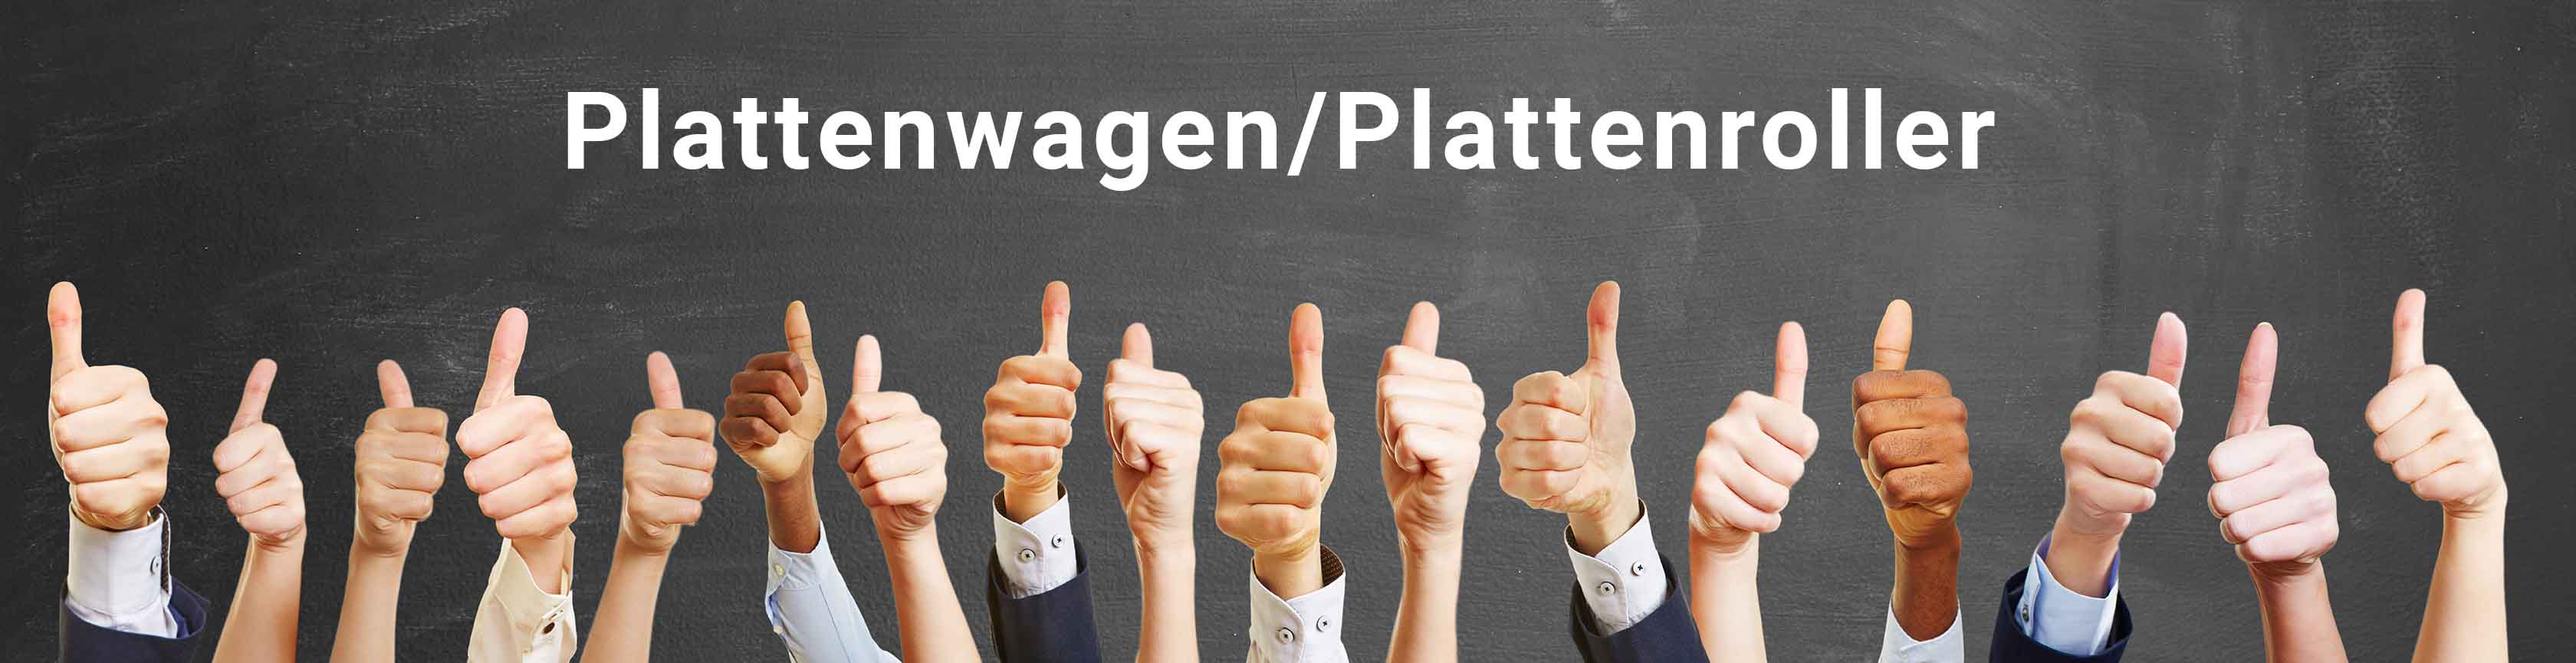 Plattenwagen_Plattenroller_BERGER-Shop_ASt